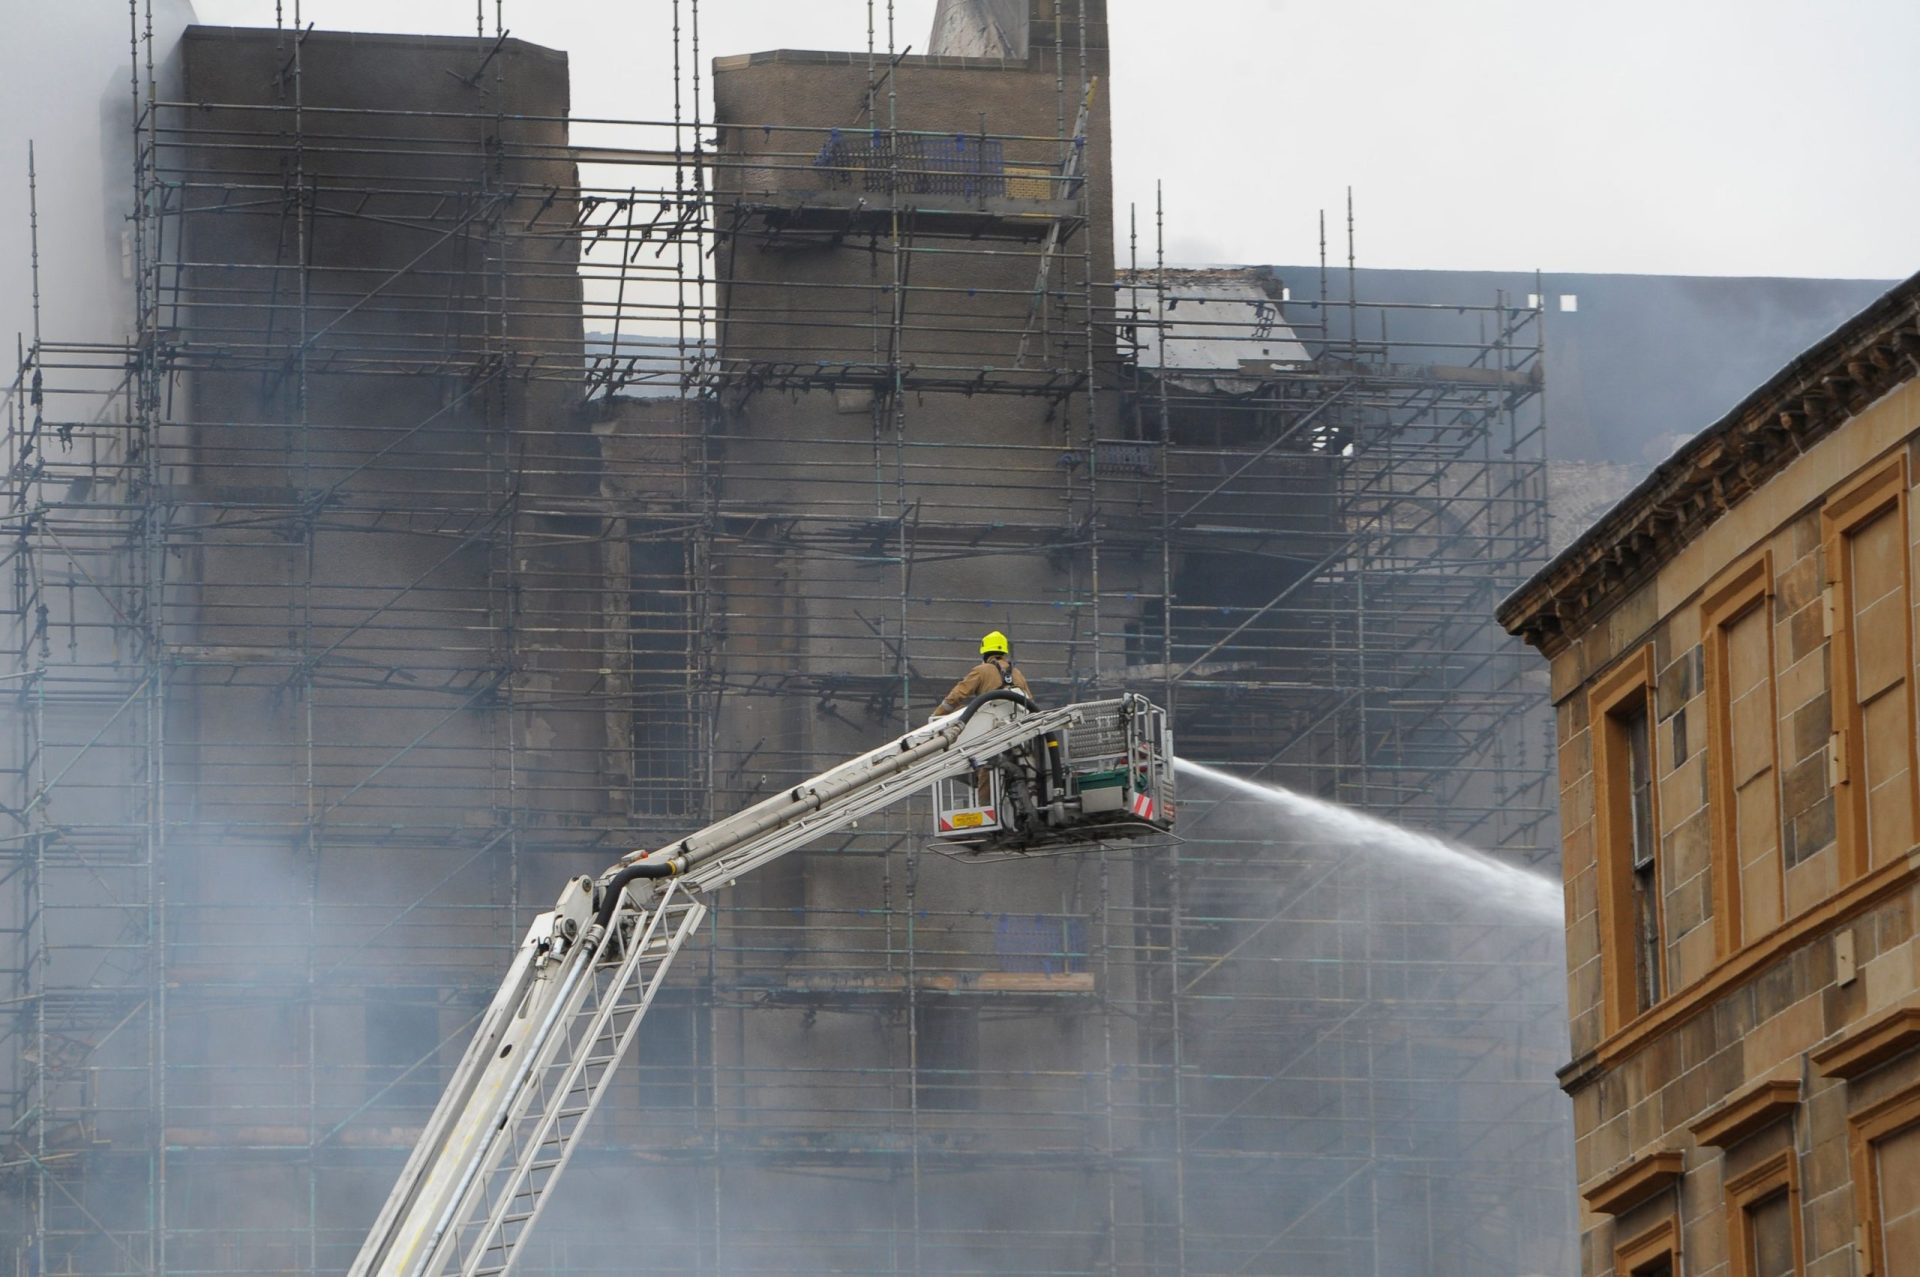 Glasgow School of Art voltou a arder quatro anos depois